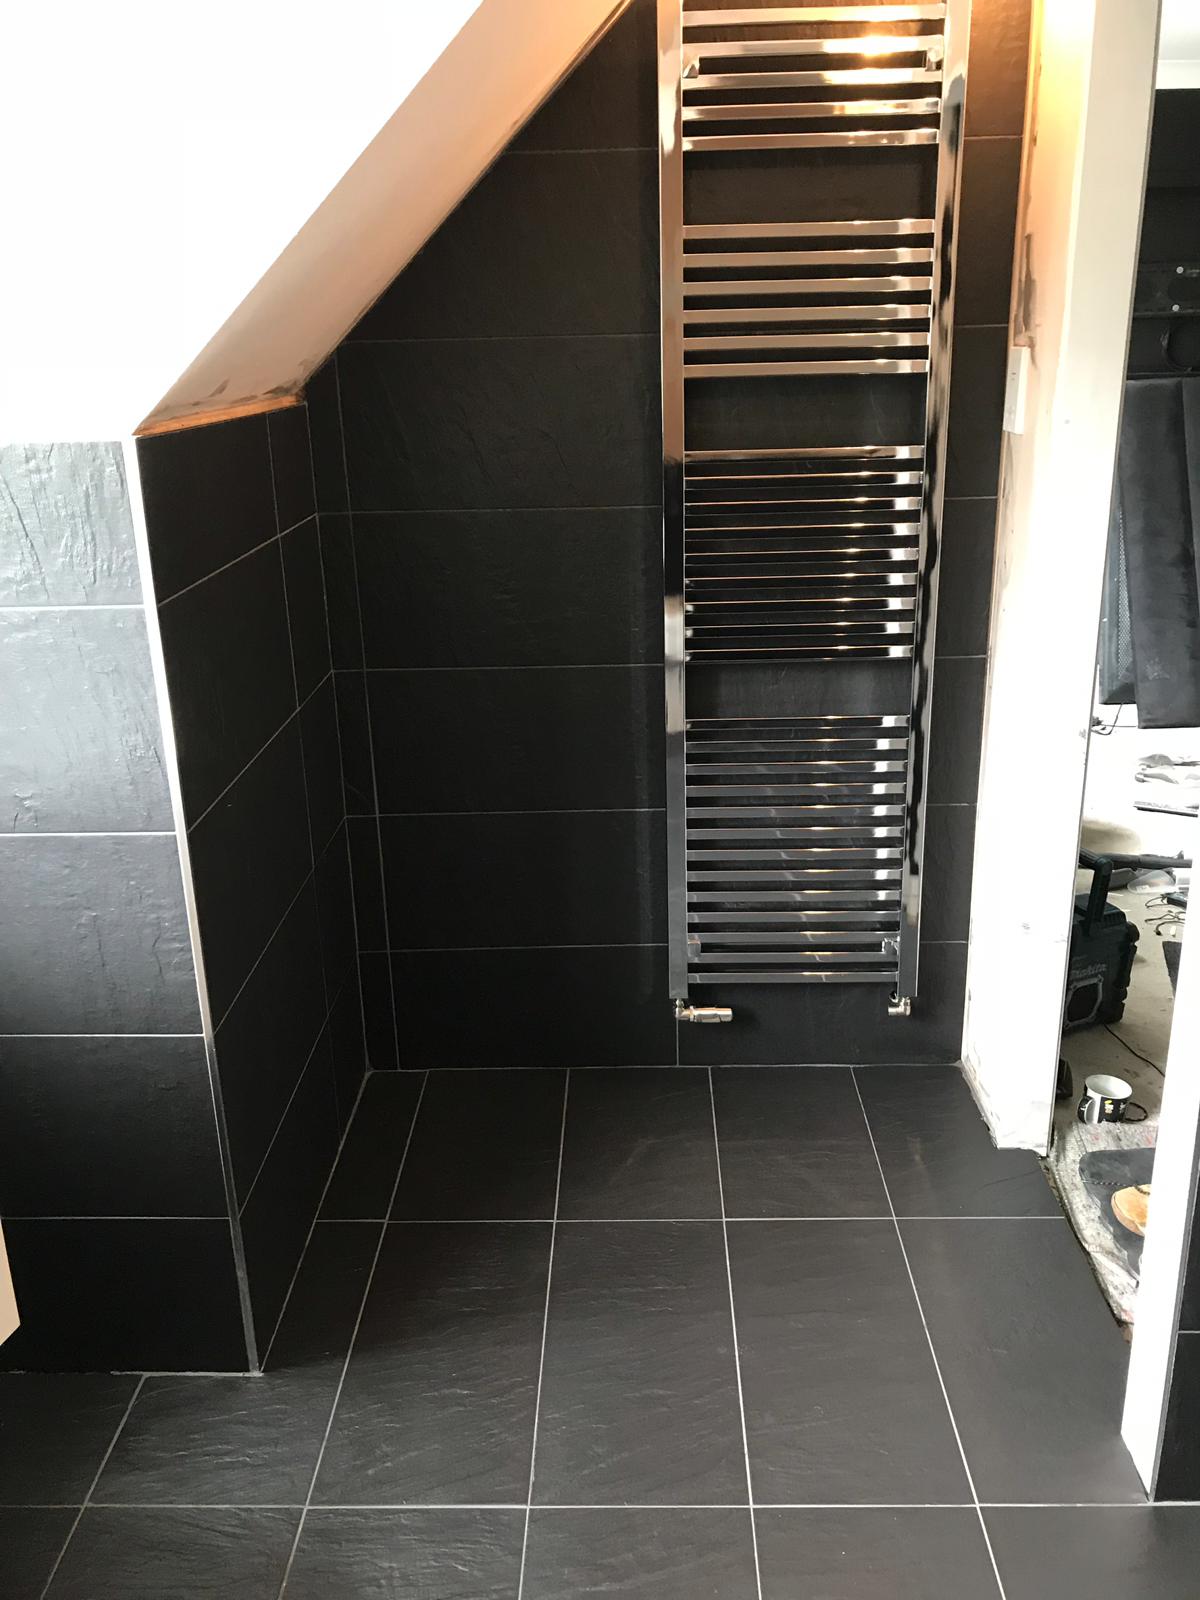 Black Porcelain Bathroom Floor After Cleaning Stevenage